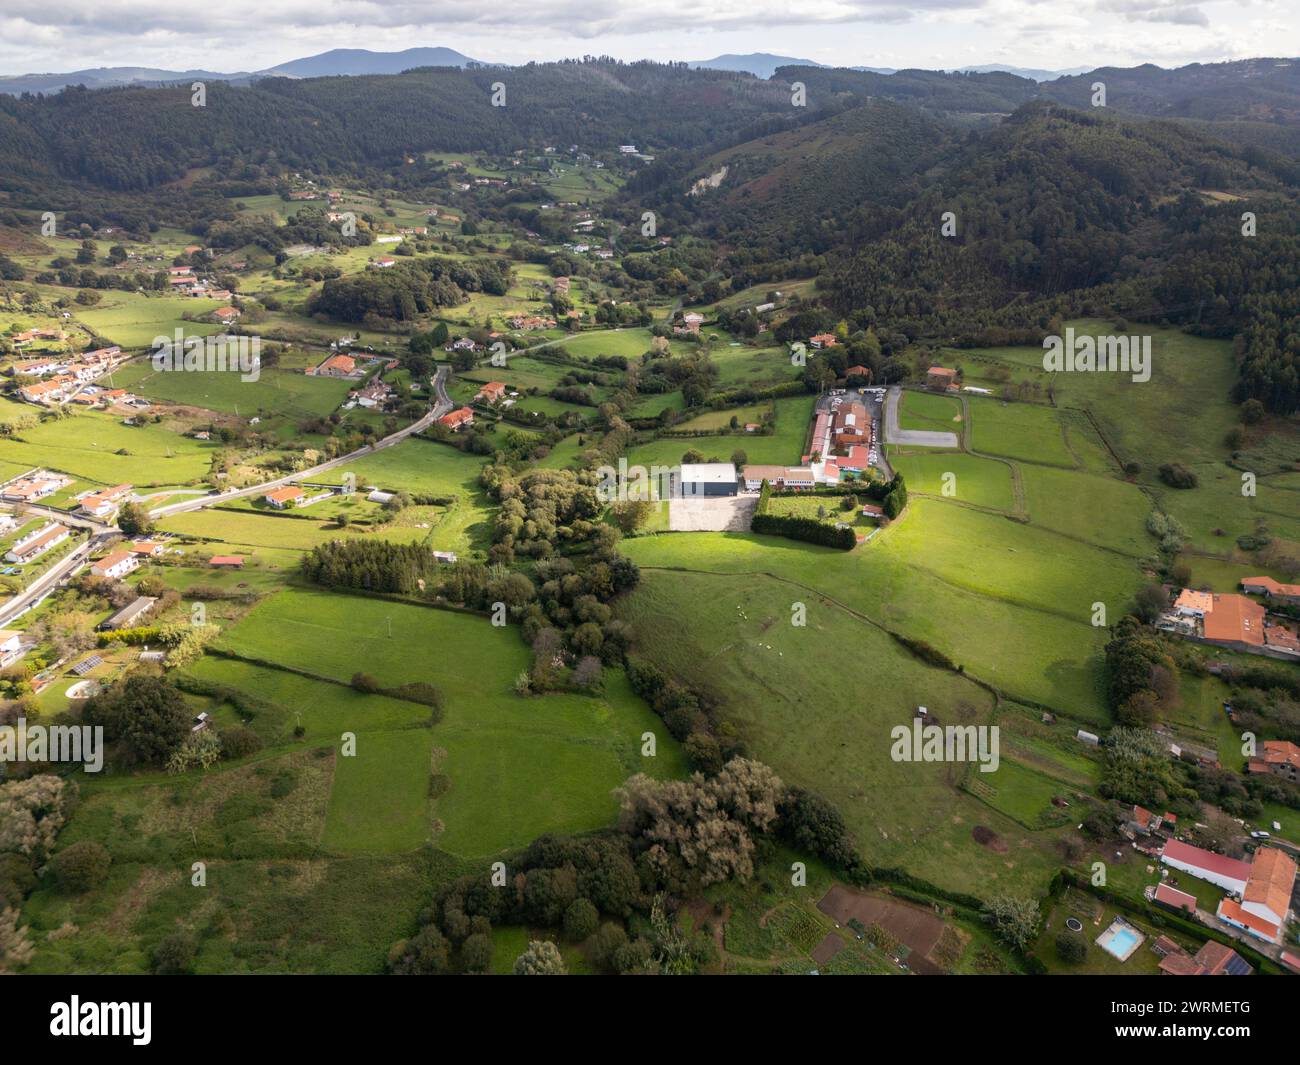 Un drone cattura la tranquilla bellezza di una verde area rurale con campi sportivi tra colline ondulate ed edifici sparsi. Foto Stock